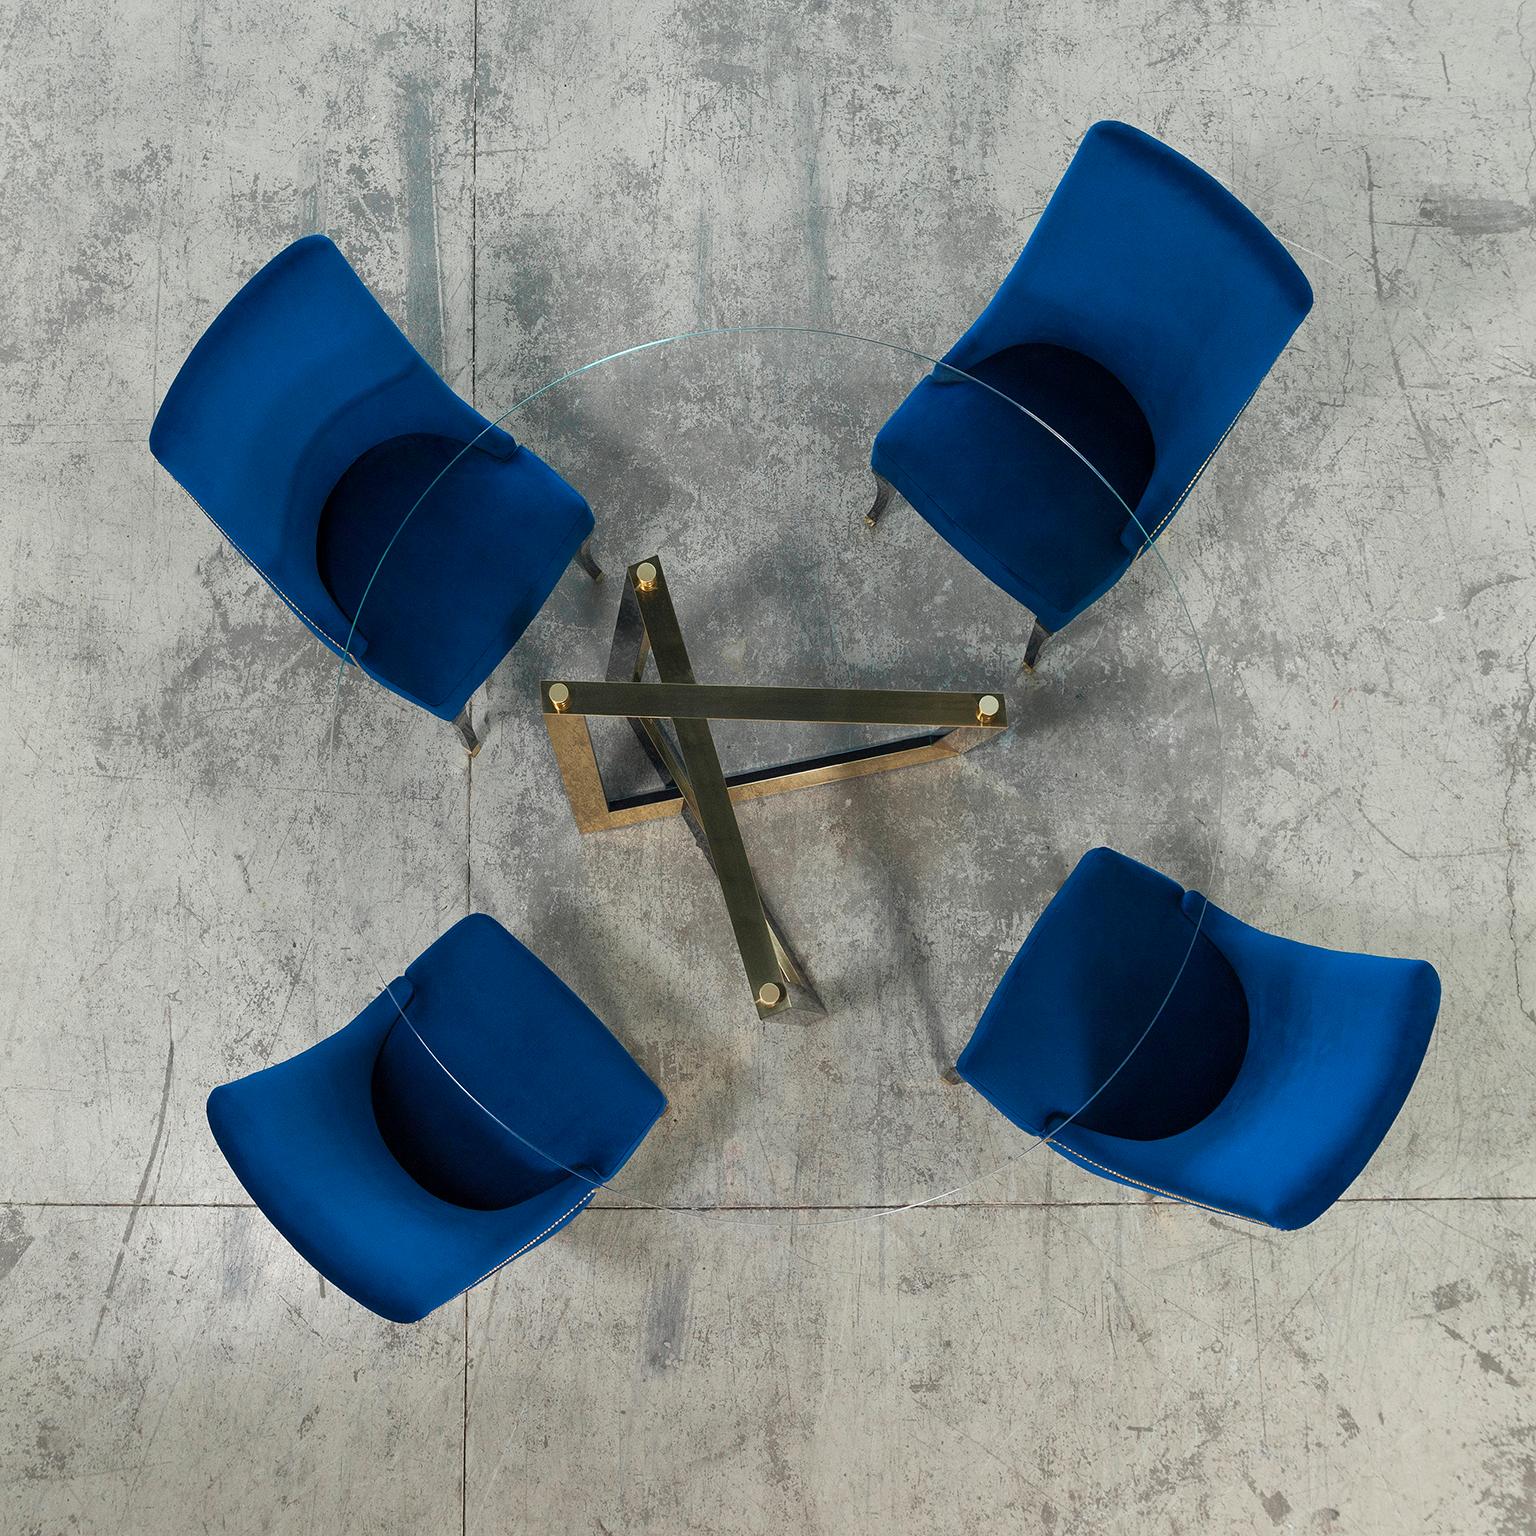 Chaise Pleathea, Collection Contemporary, Fabriquée à la main au Portugal - Europe par Greenapple.

Plathea crée un confort élégant et classique dans votre salle à manger. Tapissée de velours bleu foncé, cette chaise en bois dont le dossier est orné